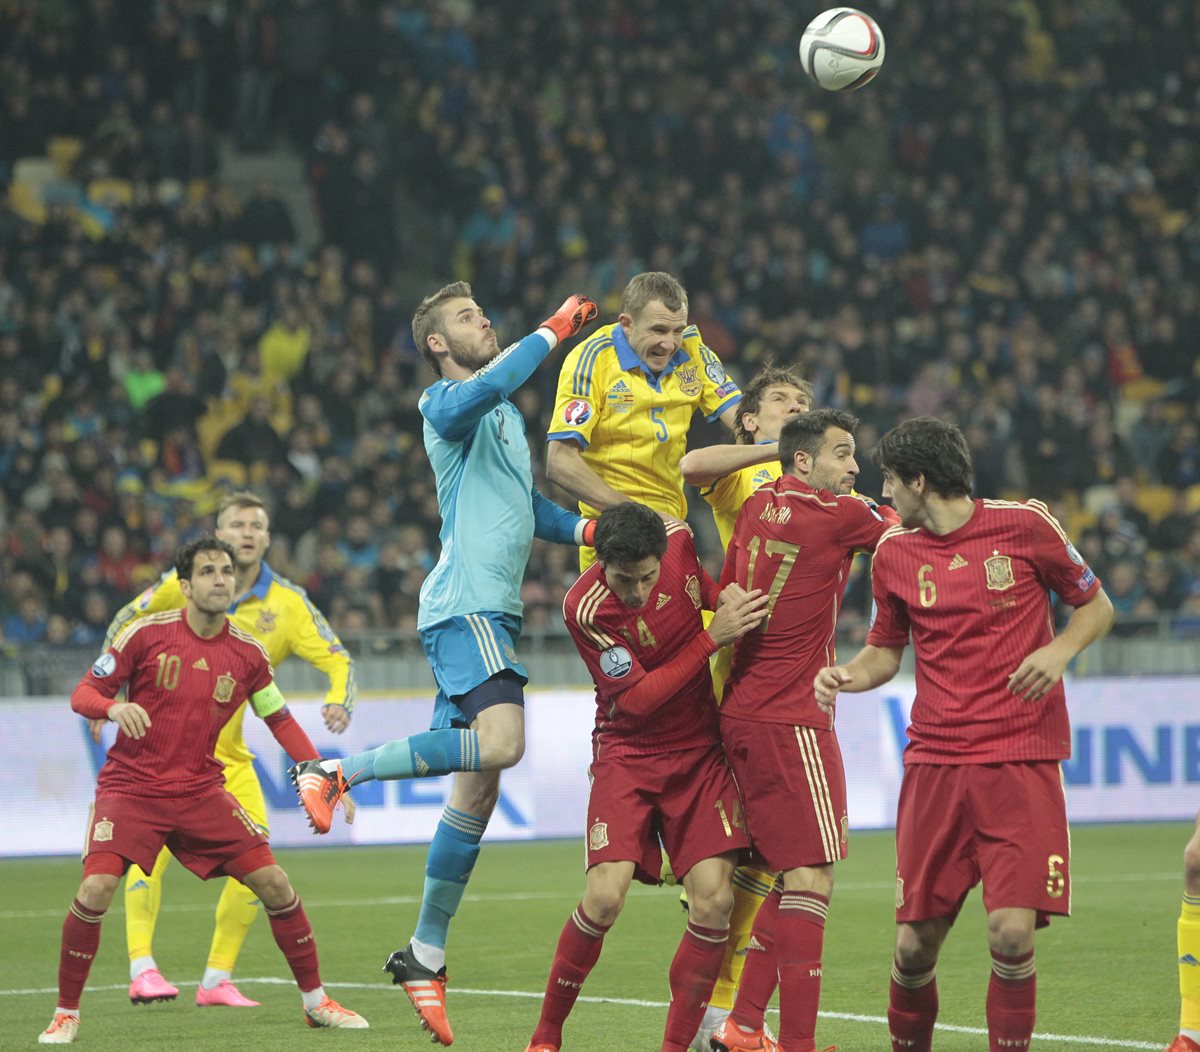 David de Gea en una de sus grandes actuaciones de ayer durante el partido entre la selección de España y Ucrania. (Foto Prensa Libre: AP)